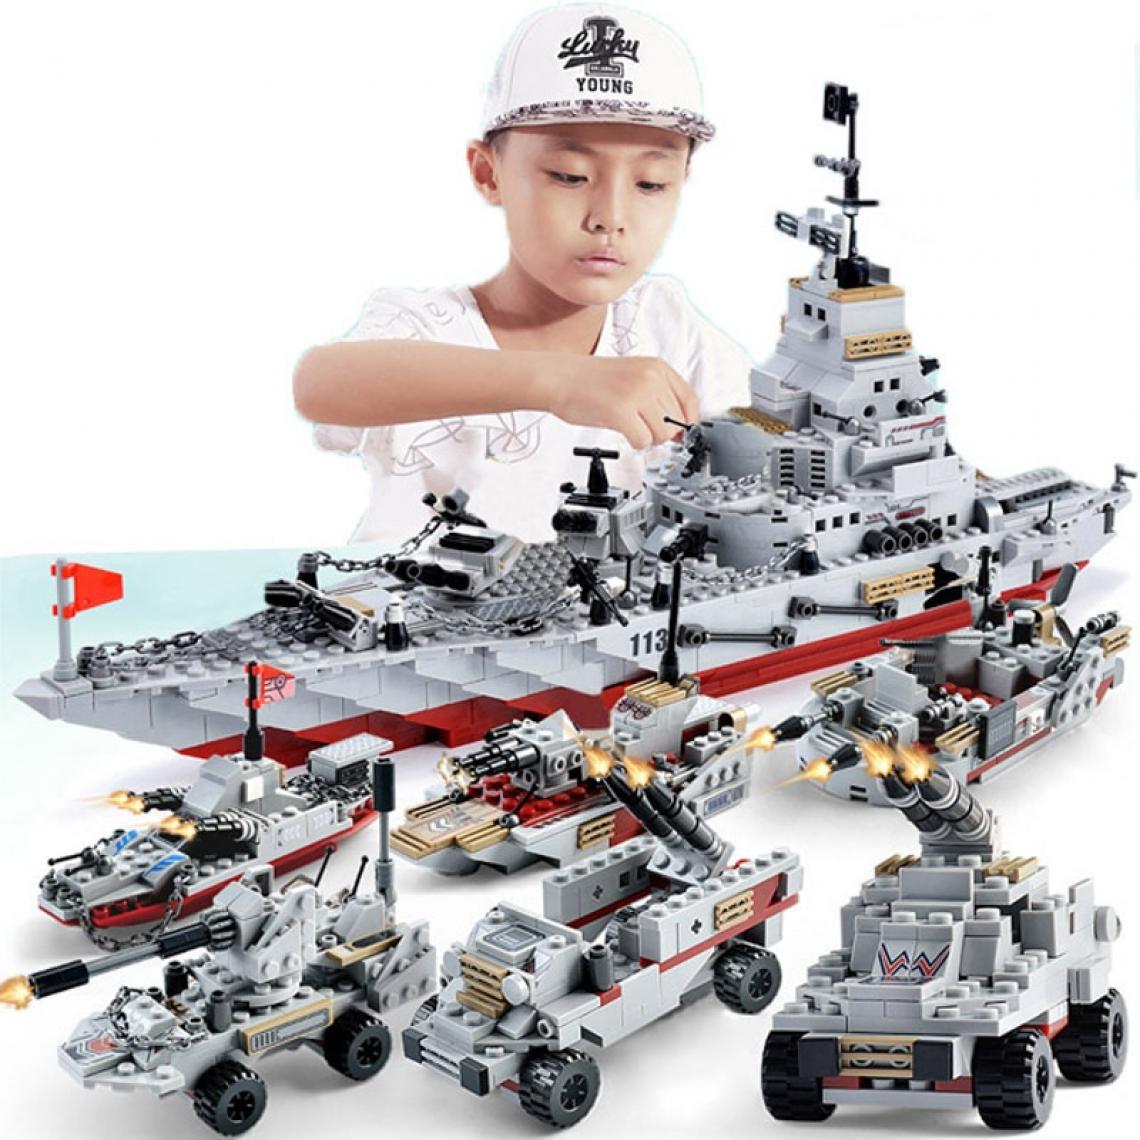 Universal - Navires de guerre, aéronefs, corps de marines, blocs de construction, briques, bâtiments de guerre, jouets pour enfants.(Coloré) - Mangas